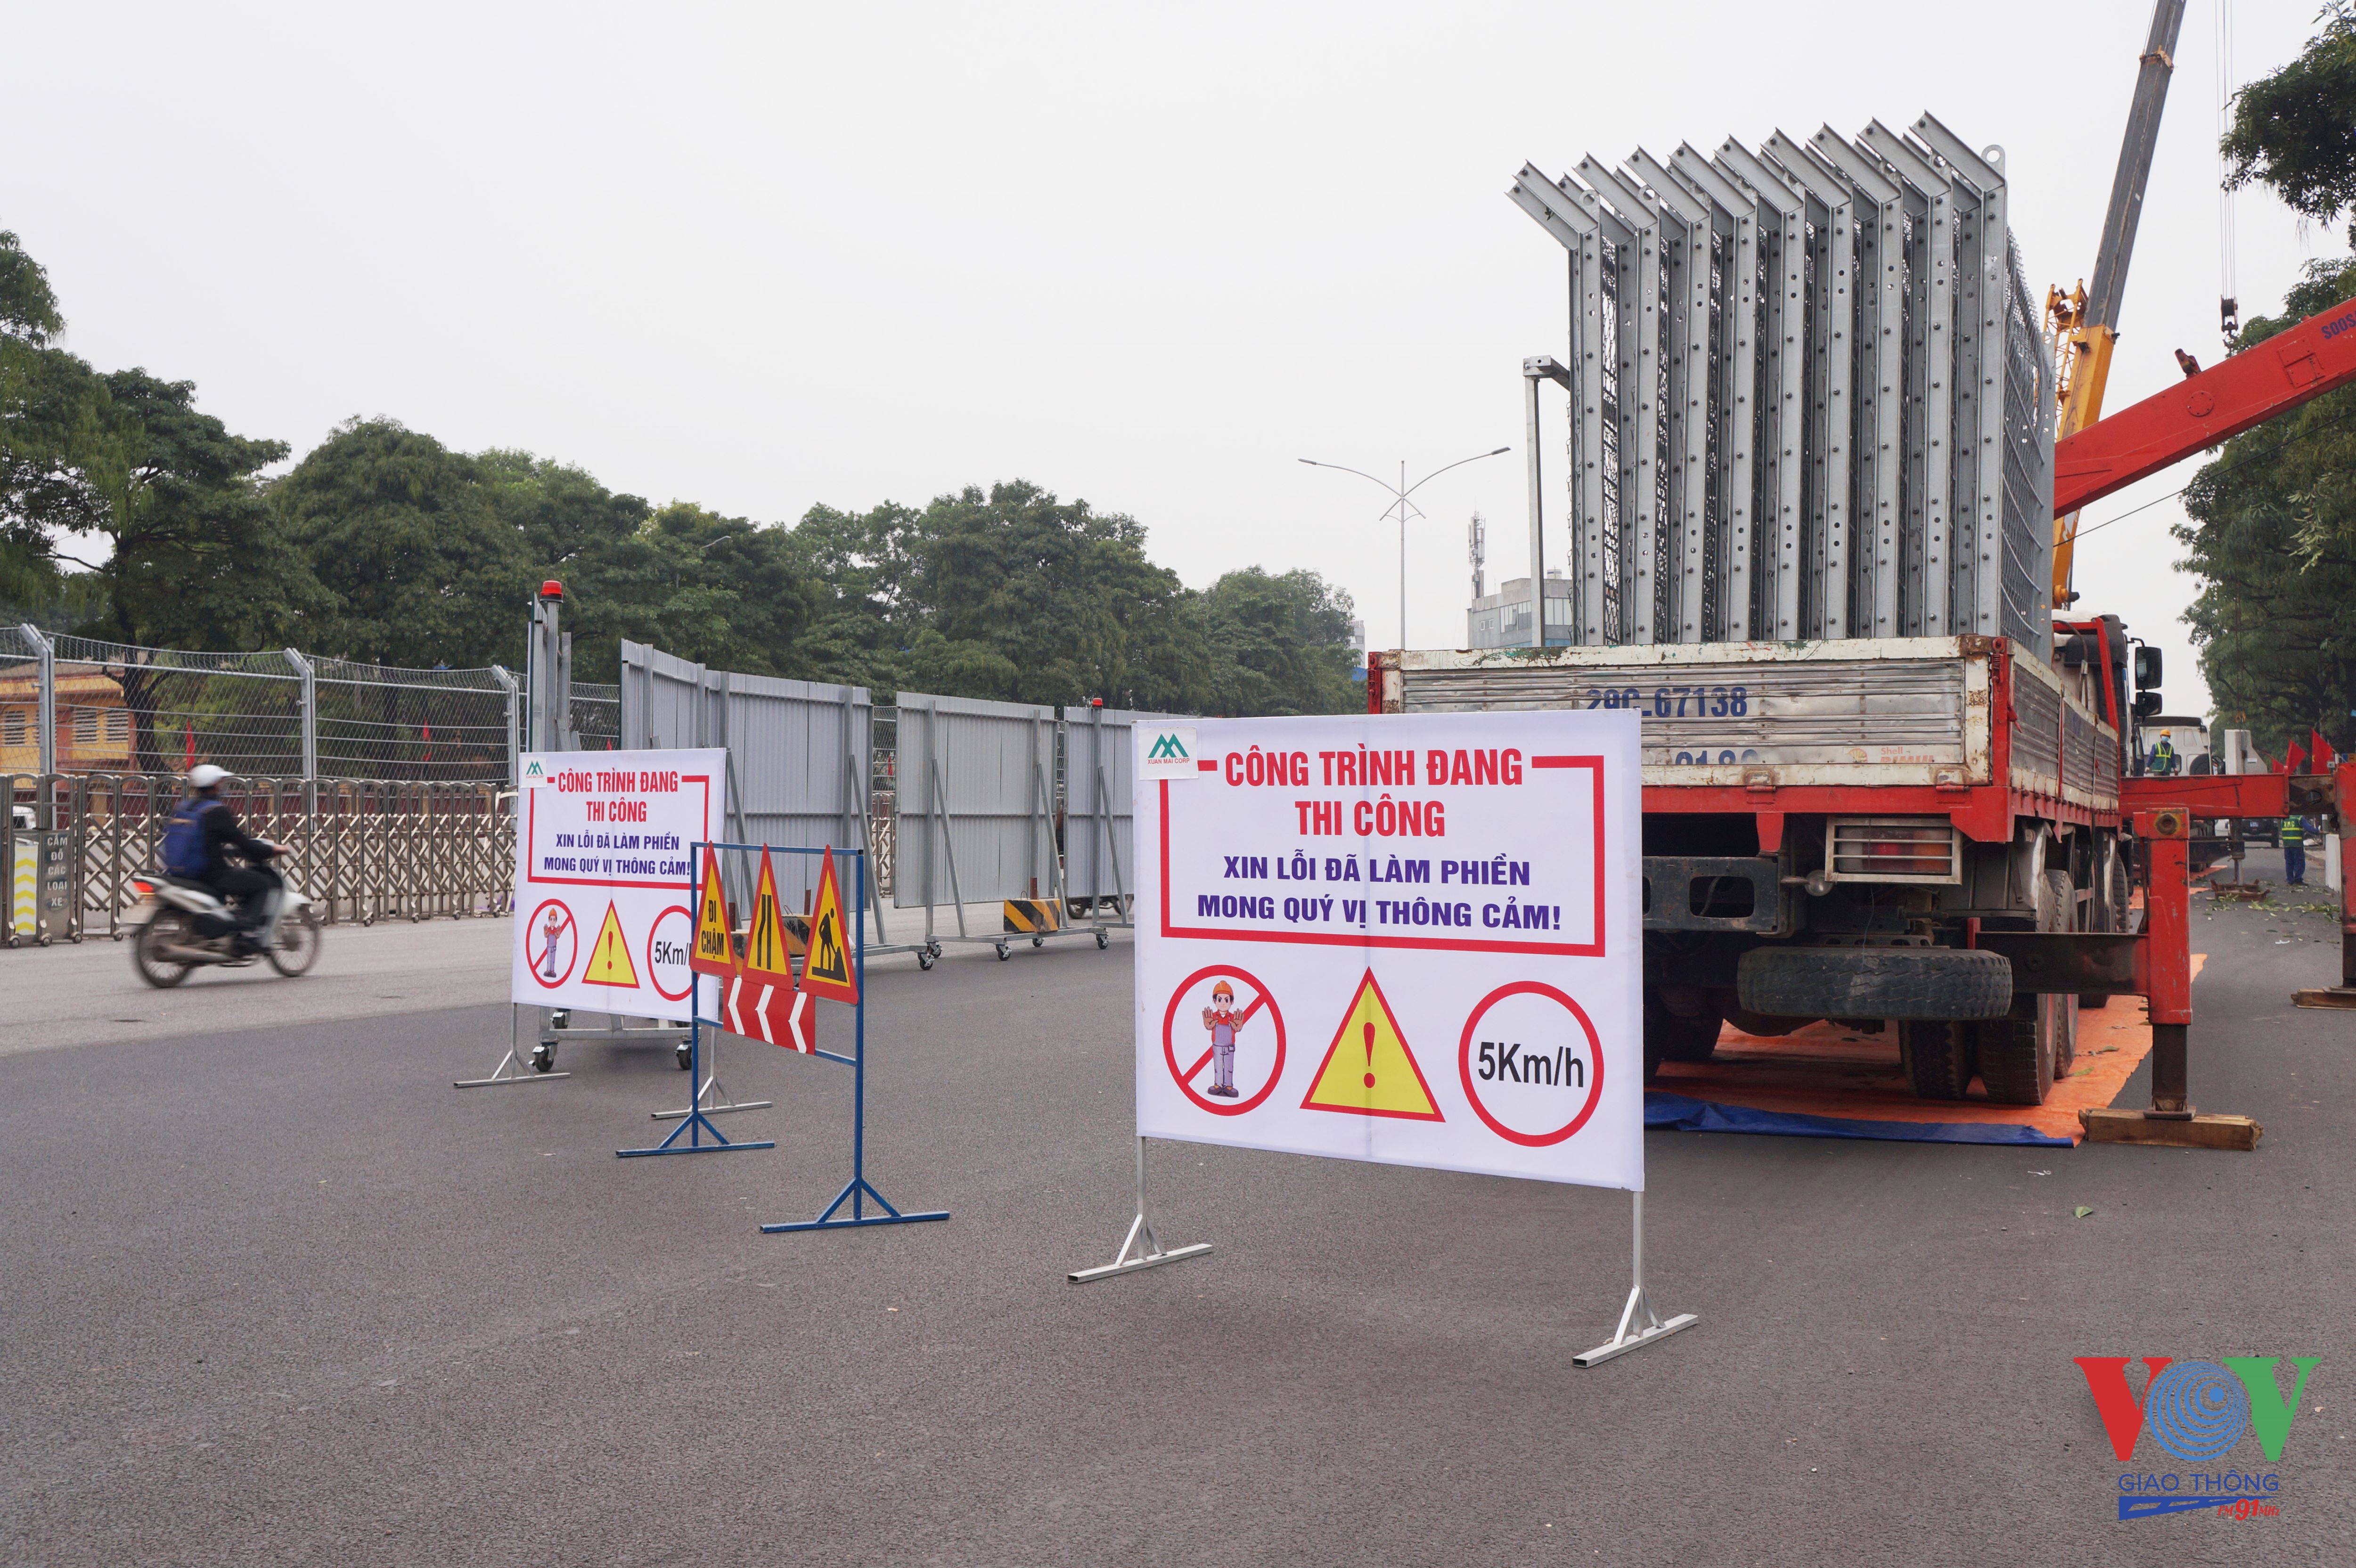 Theo Sở Giao thông Vận tải Hà Nội, việc phân luồng giao thông, cấm nhiều loại xe ở hai tuyến đường trên để bảo vệ chất lượng đường đua F1.